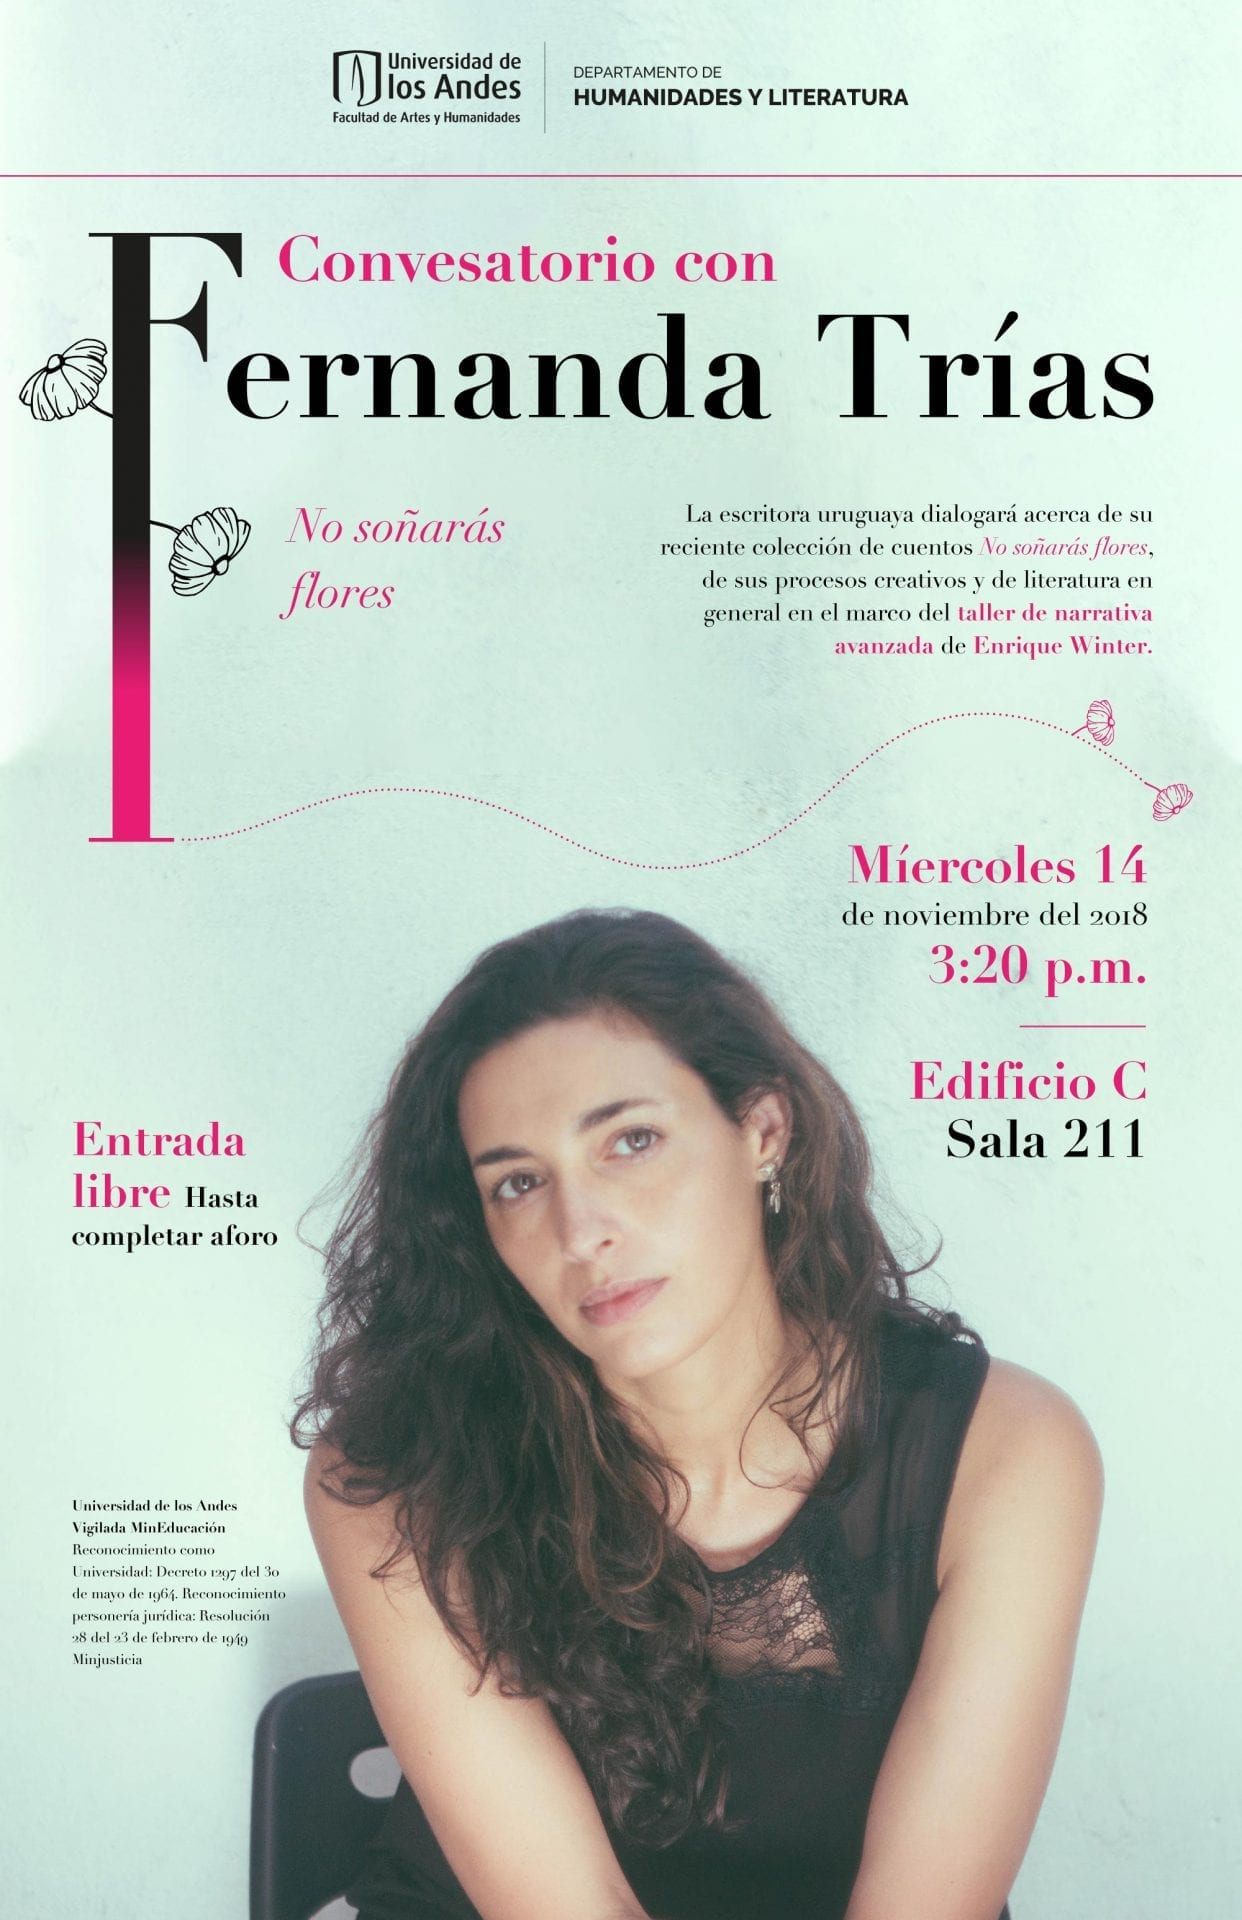 La escritora uruguaya dialogará acerca de su reciente colección de cuentos 